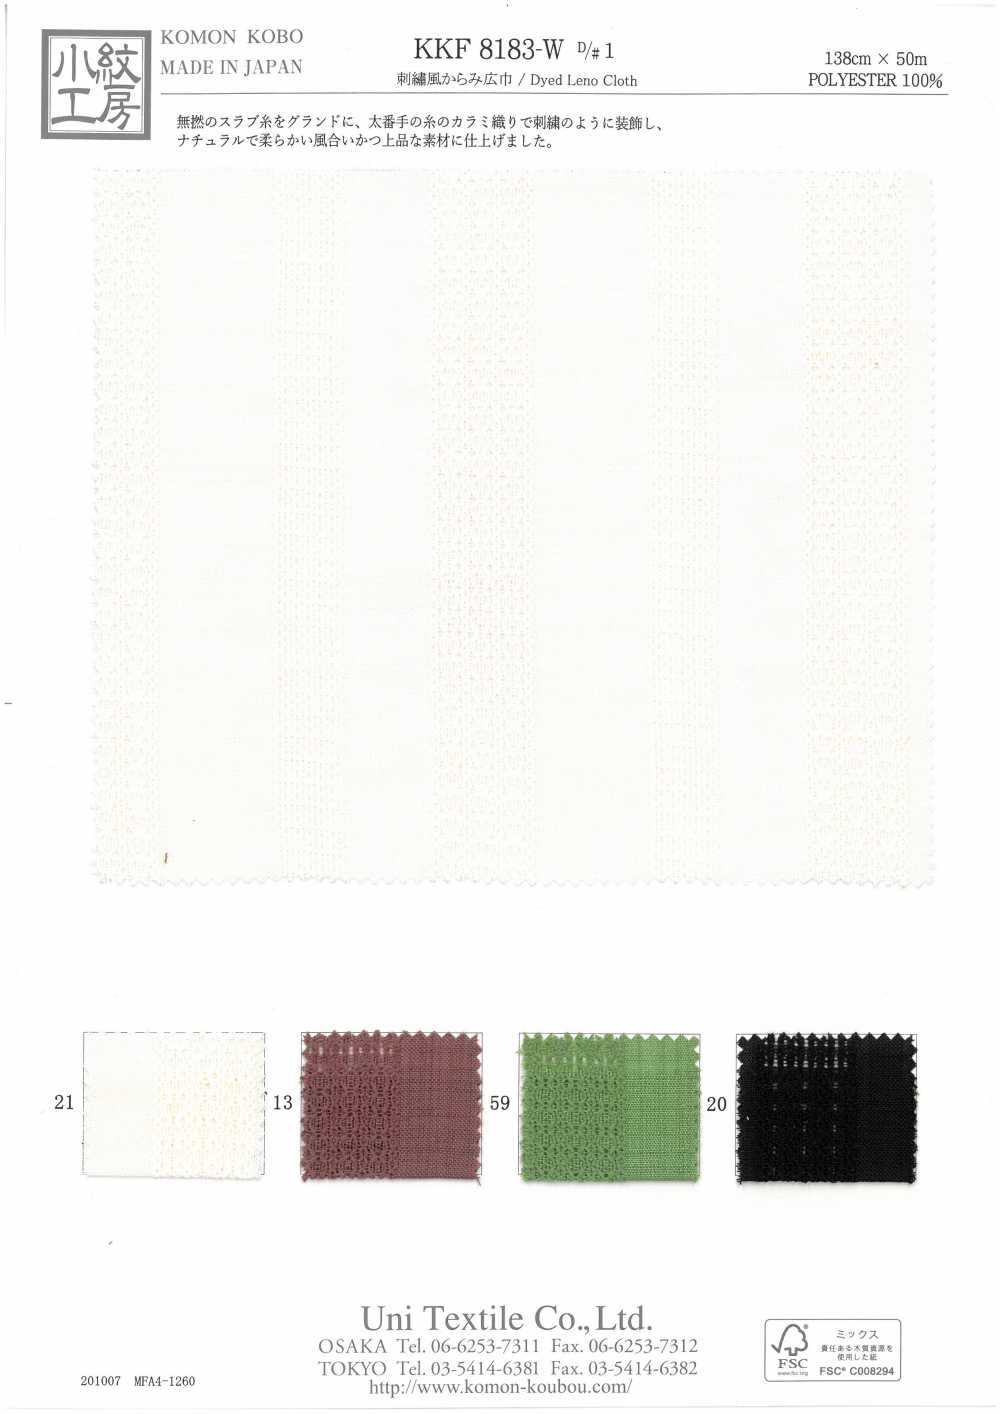 KKF8183-W-D/1 Stickstil Breite Breite[Textilgewebe] Uni Textile